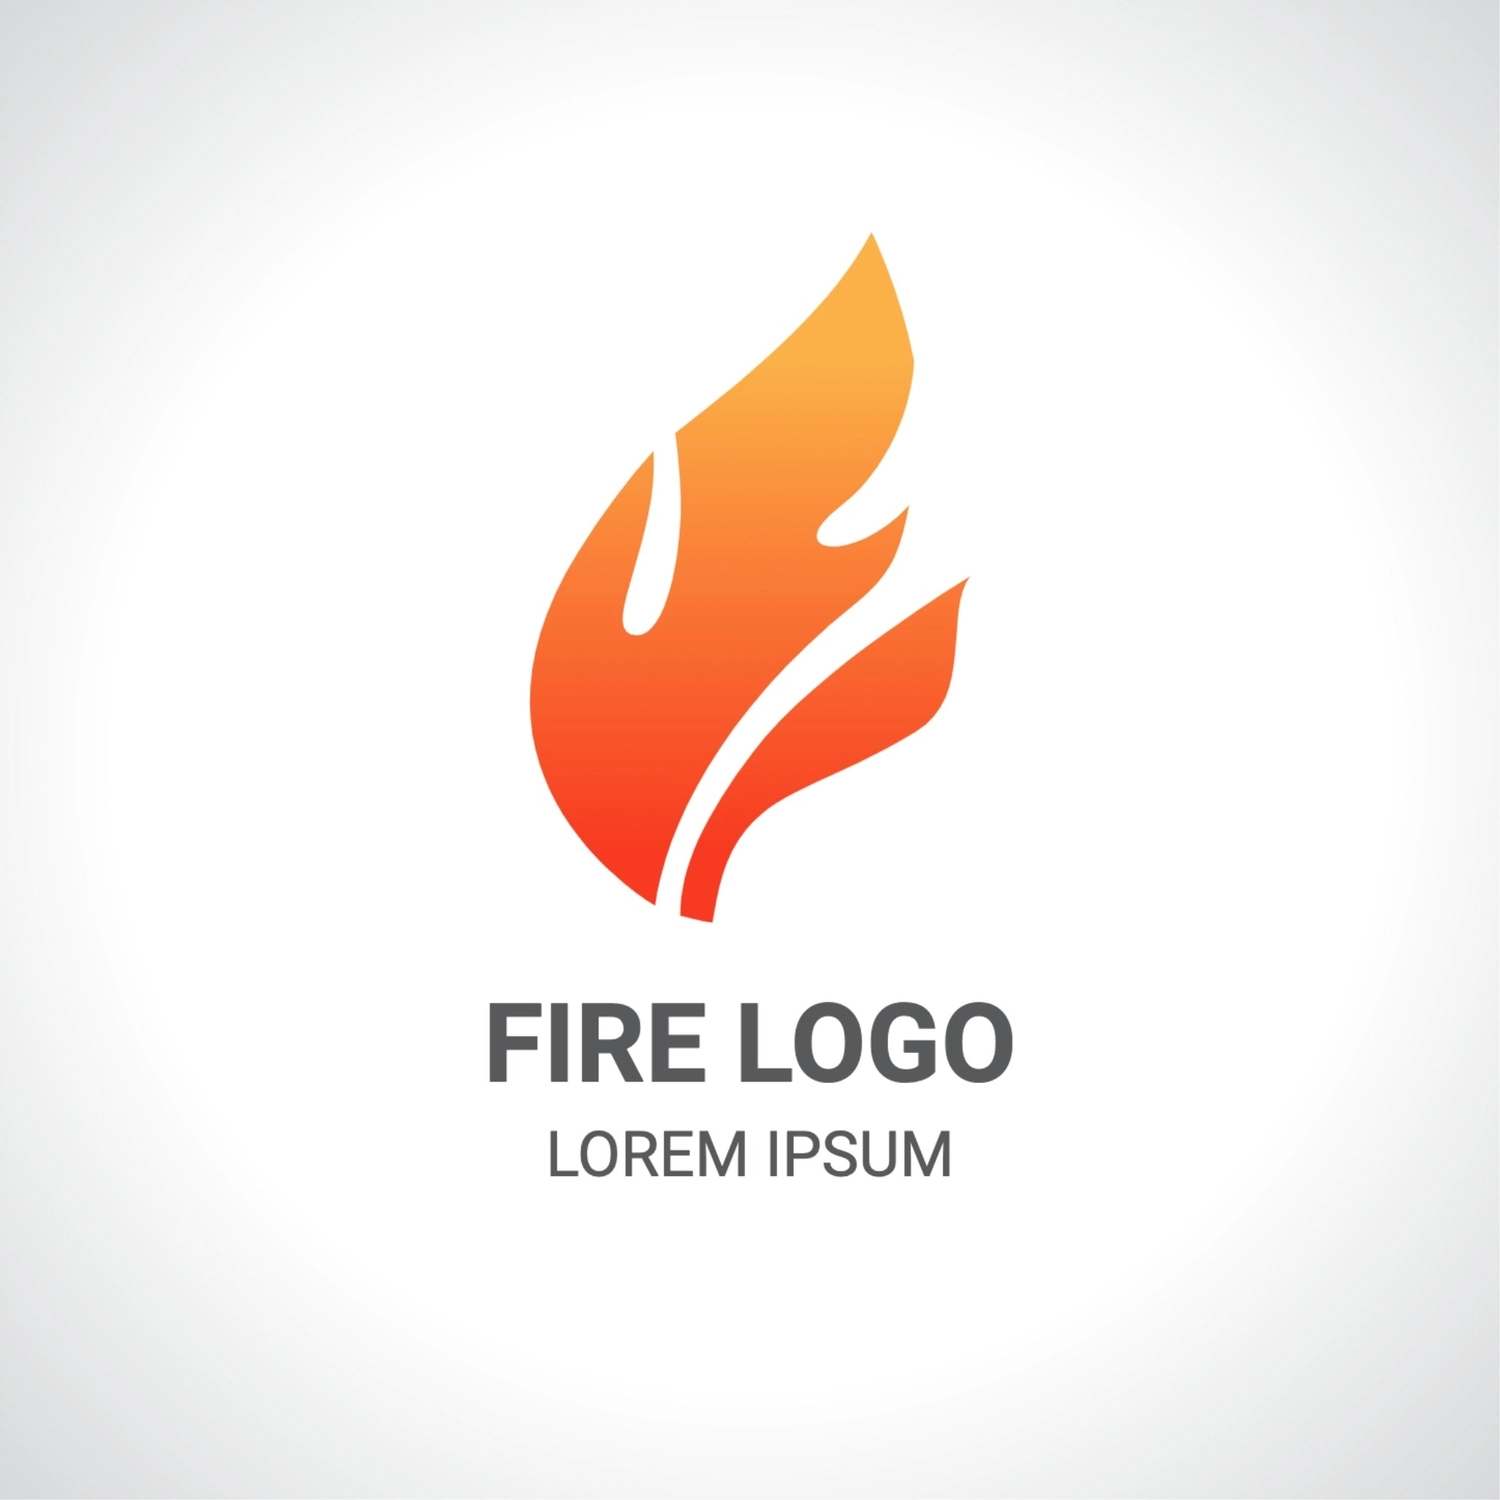 炎のロゴ, 概要, 作成, デザイン, ロゴテンプレート